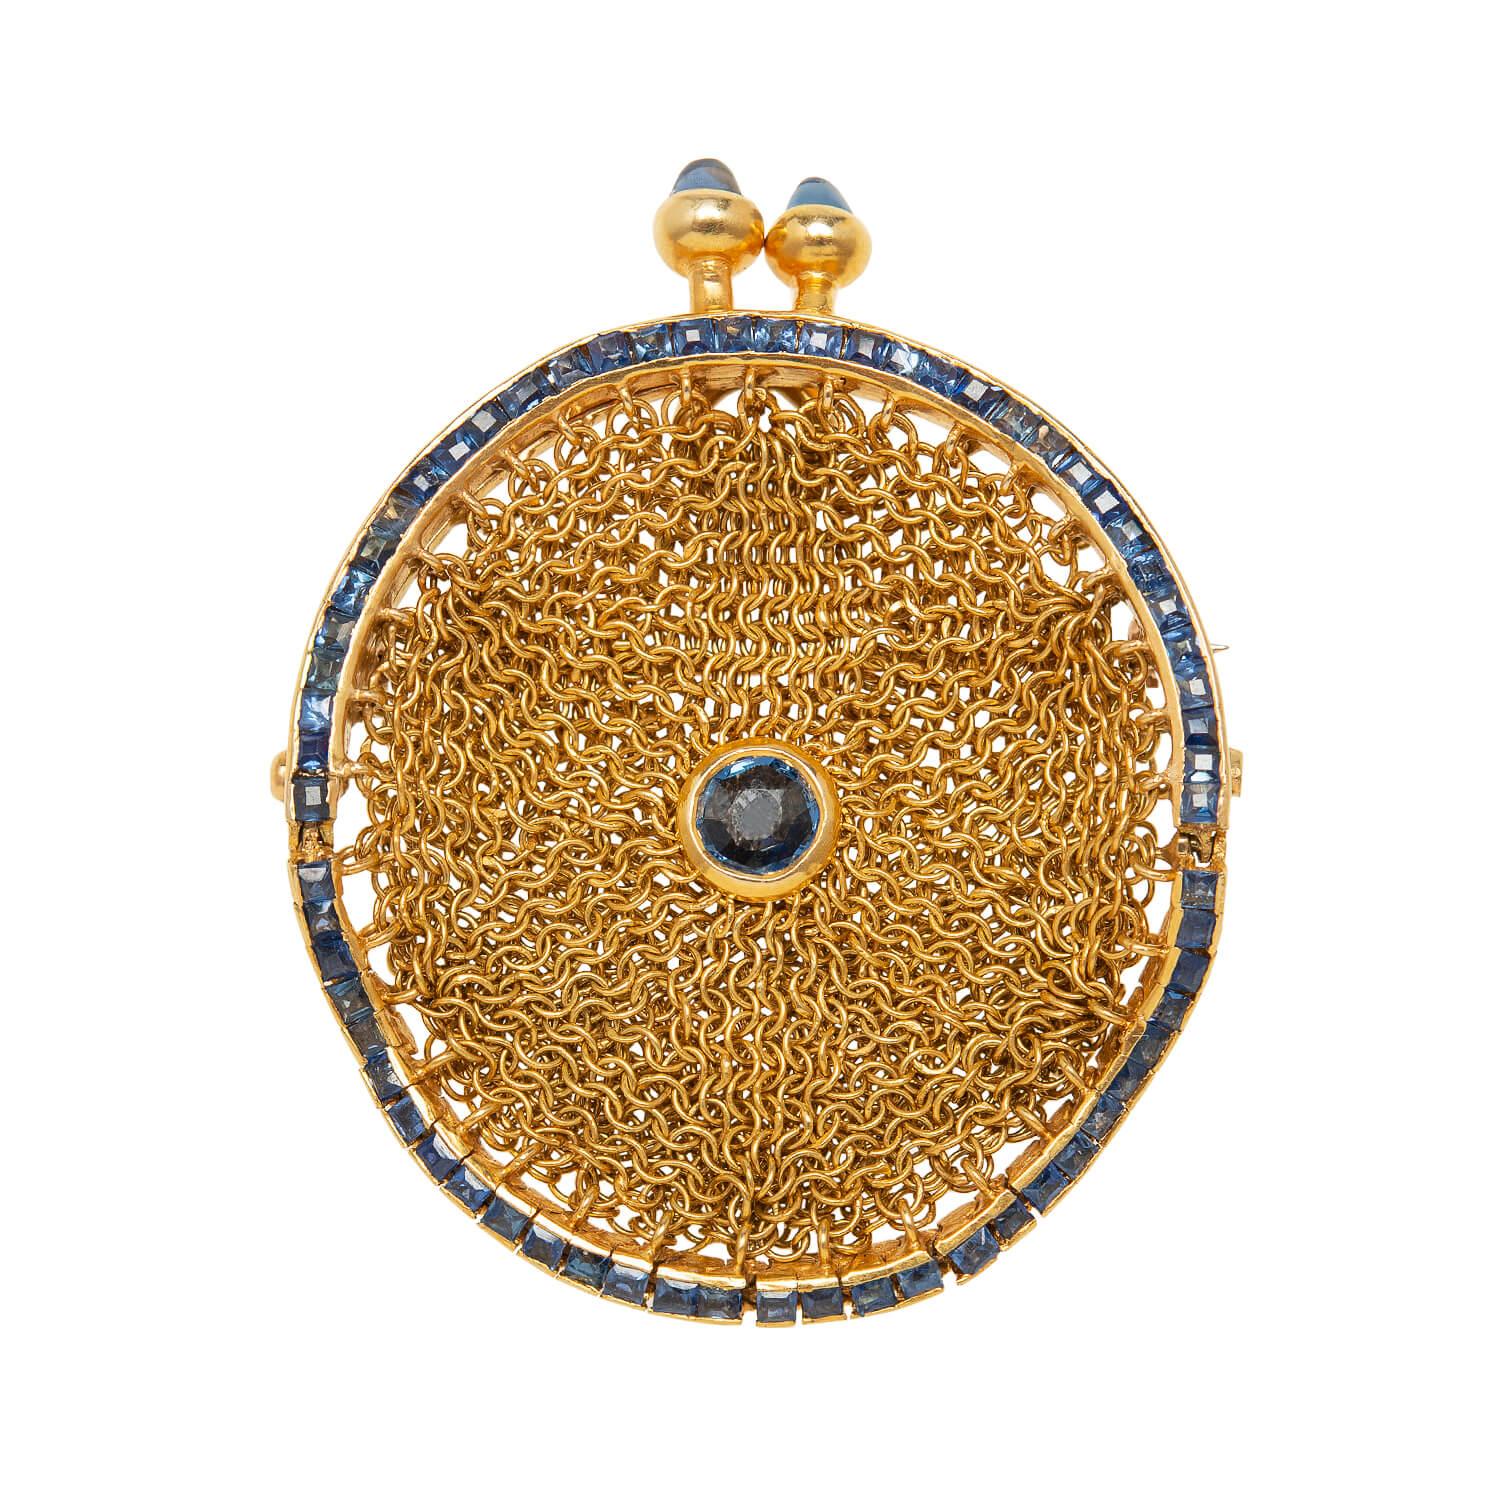 Un sac à main de châtelaine absolument magnifique et unique de l'époque victorienne (vers 1880) ! Réalisé en or jaune 18 carats, ce porte-monnaie orné est doté d'un magnifique cadre qui renferme un sac en maille forgé à la main. La monture présente